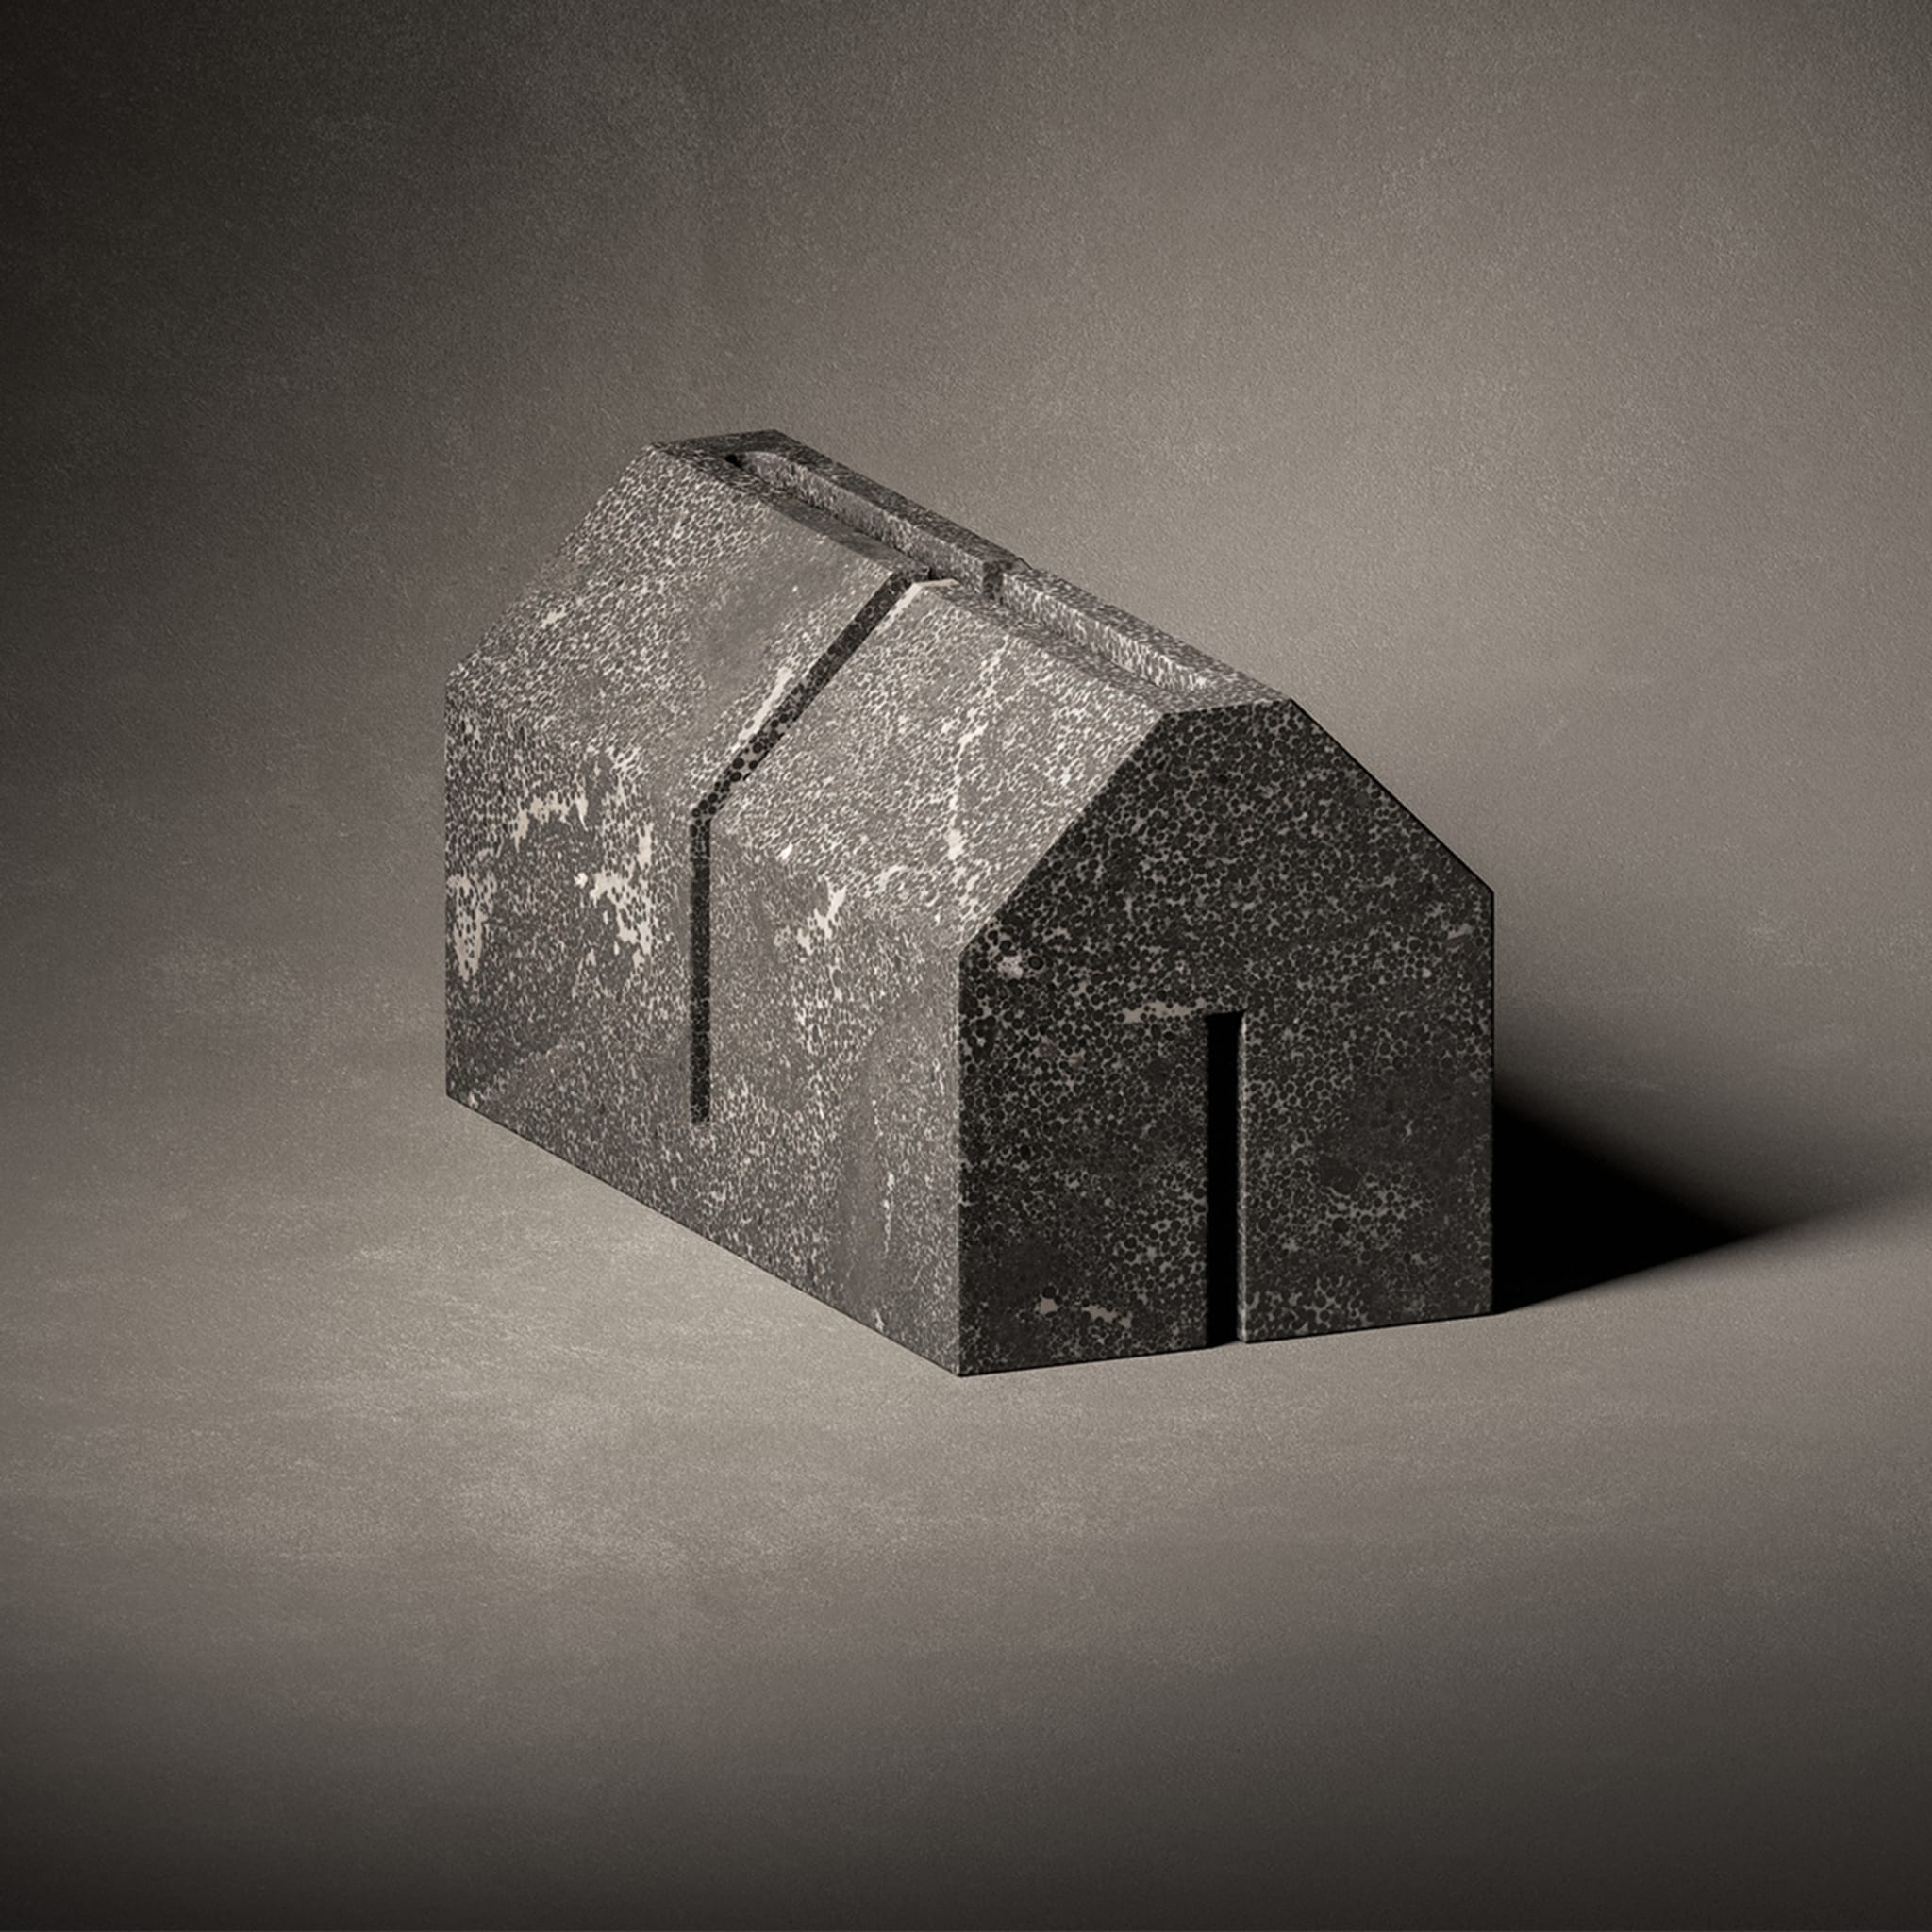 Le village - Maison de pierre Sculpture en pierre d'Avola par John Pawson - Vue alternative 1